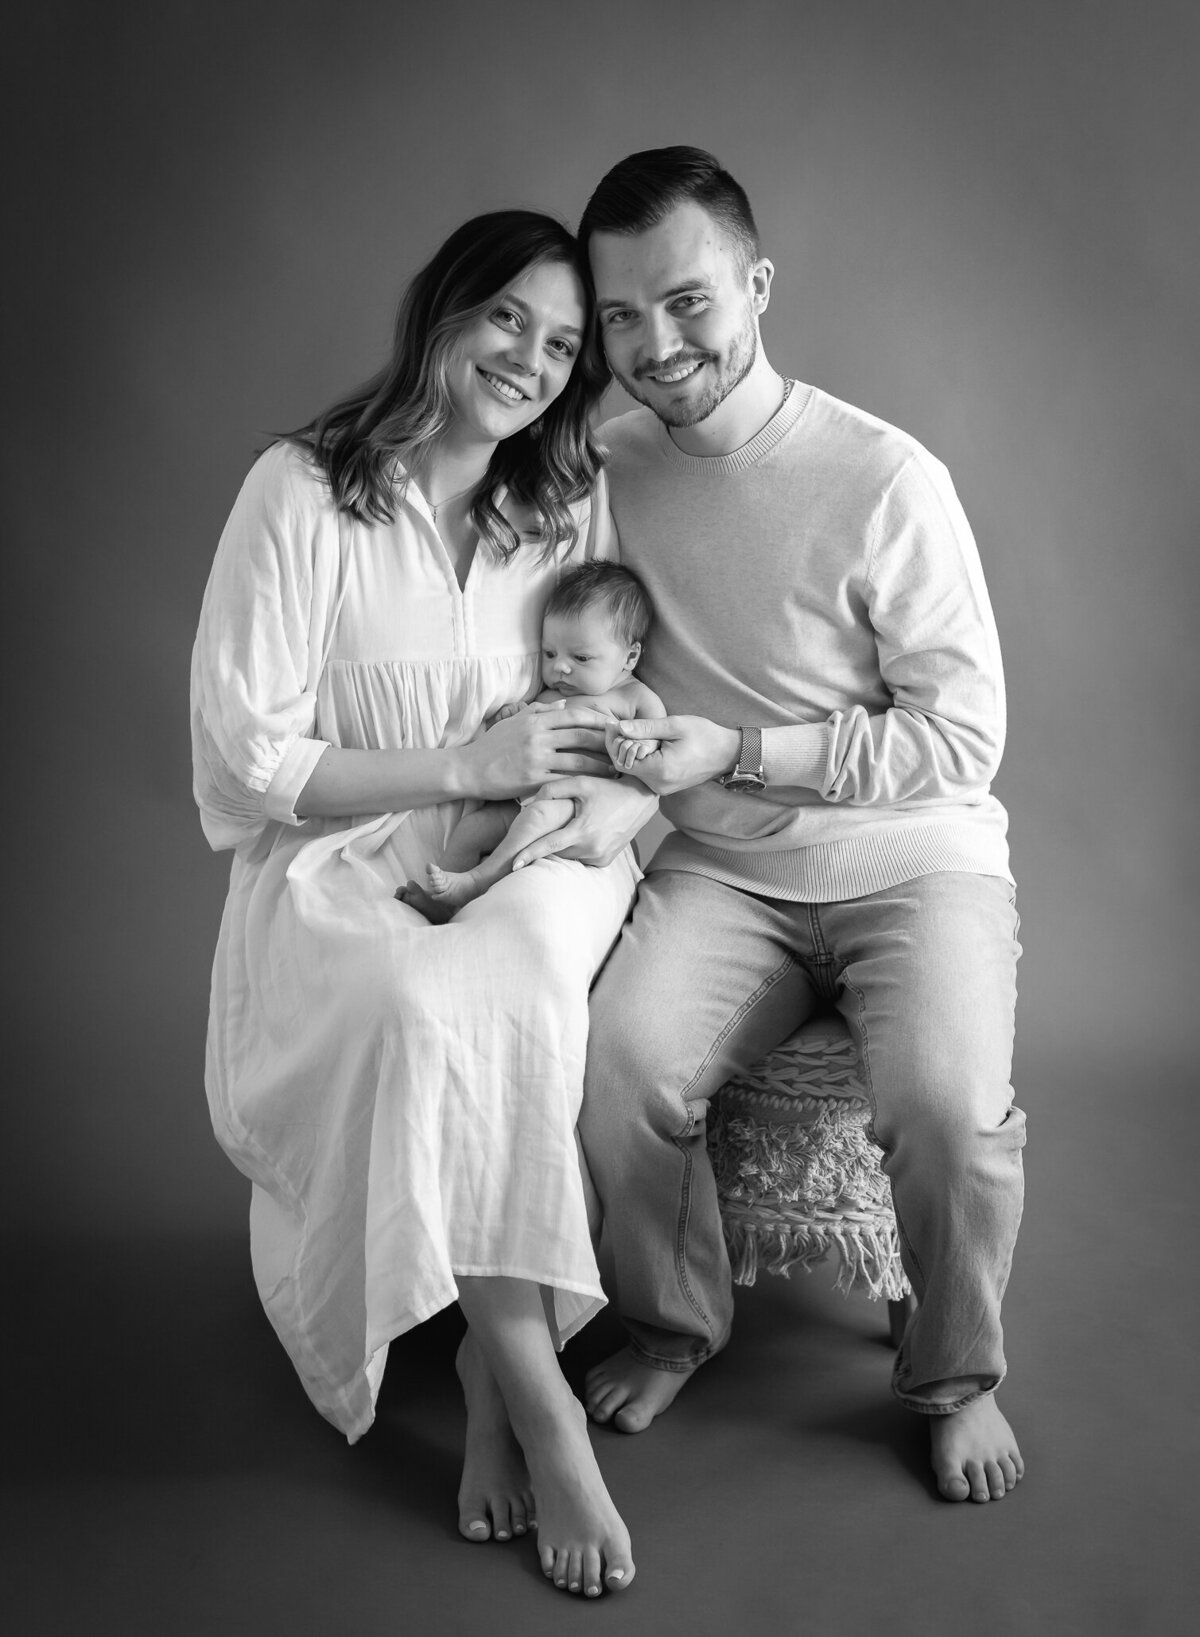 beautiful couple in black & white studio portrait with newborn